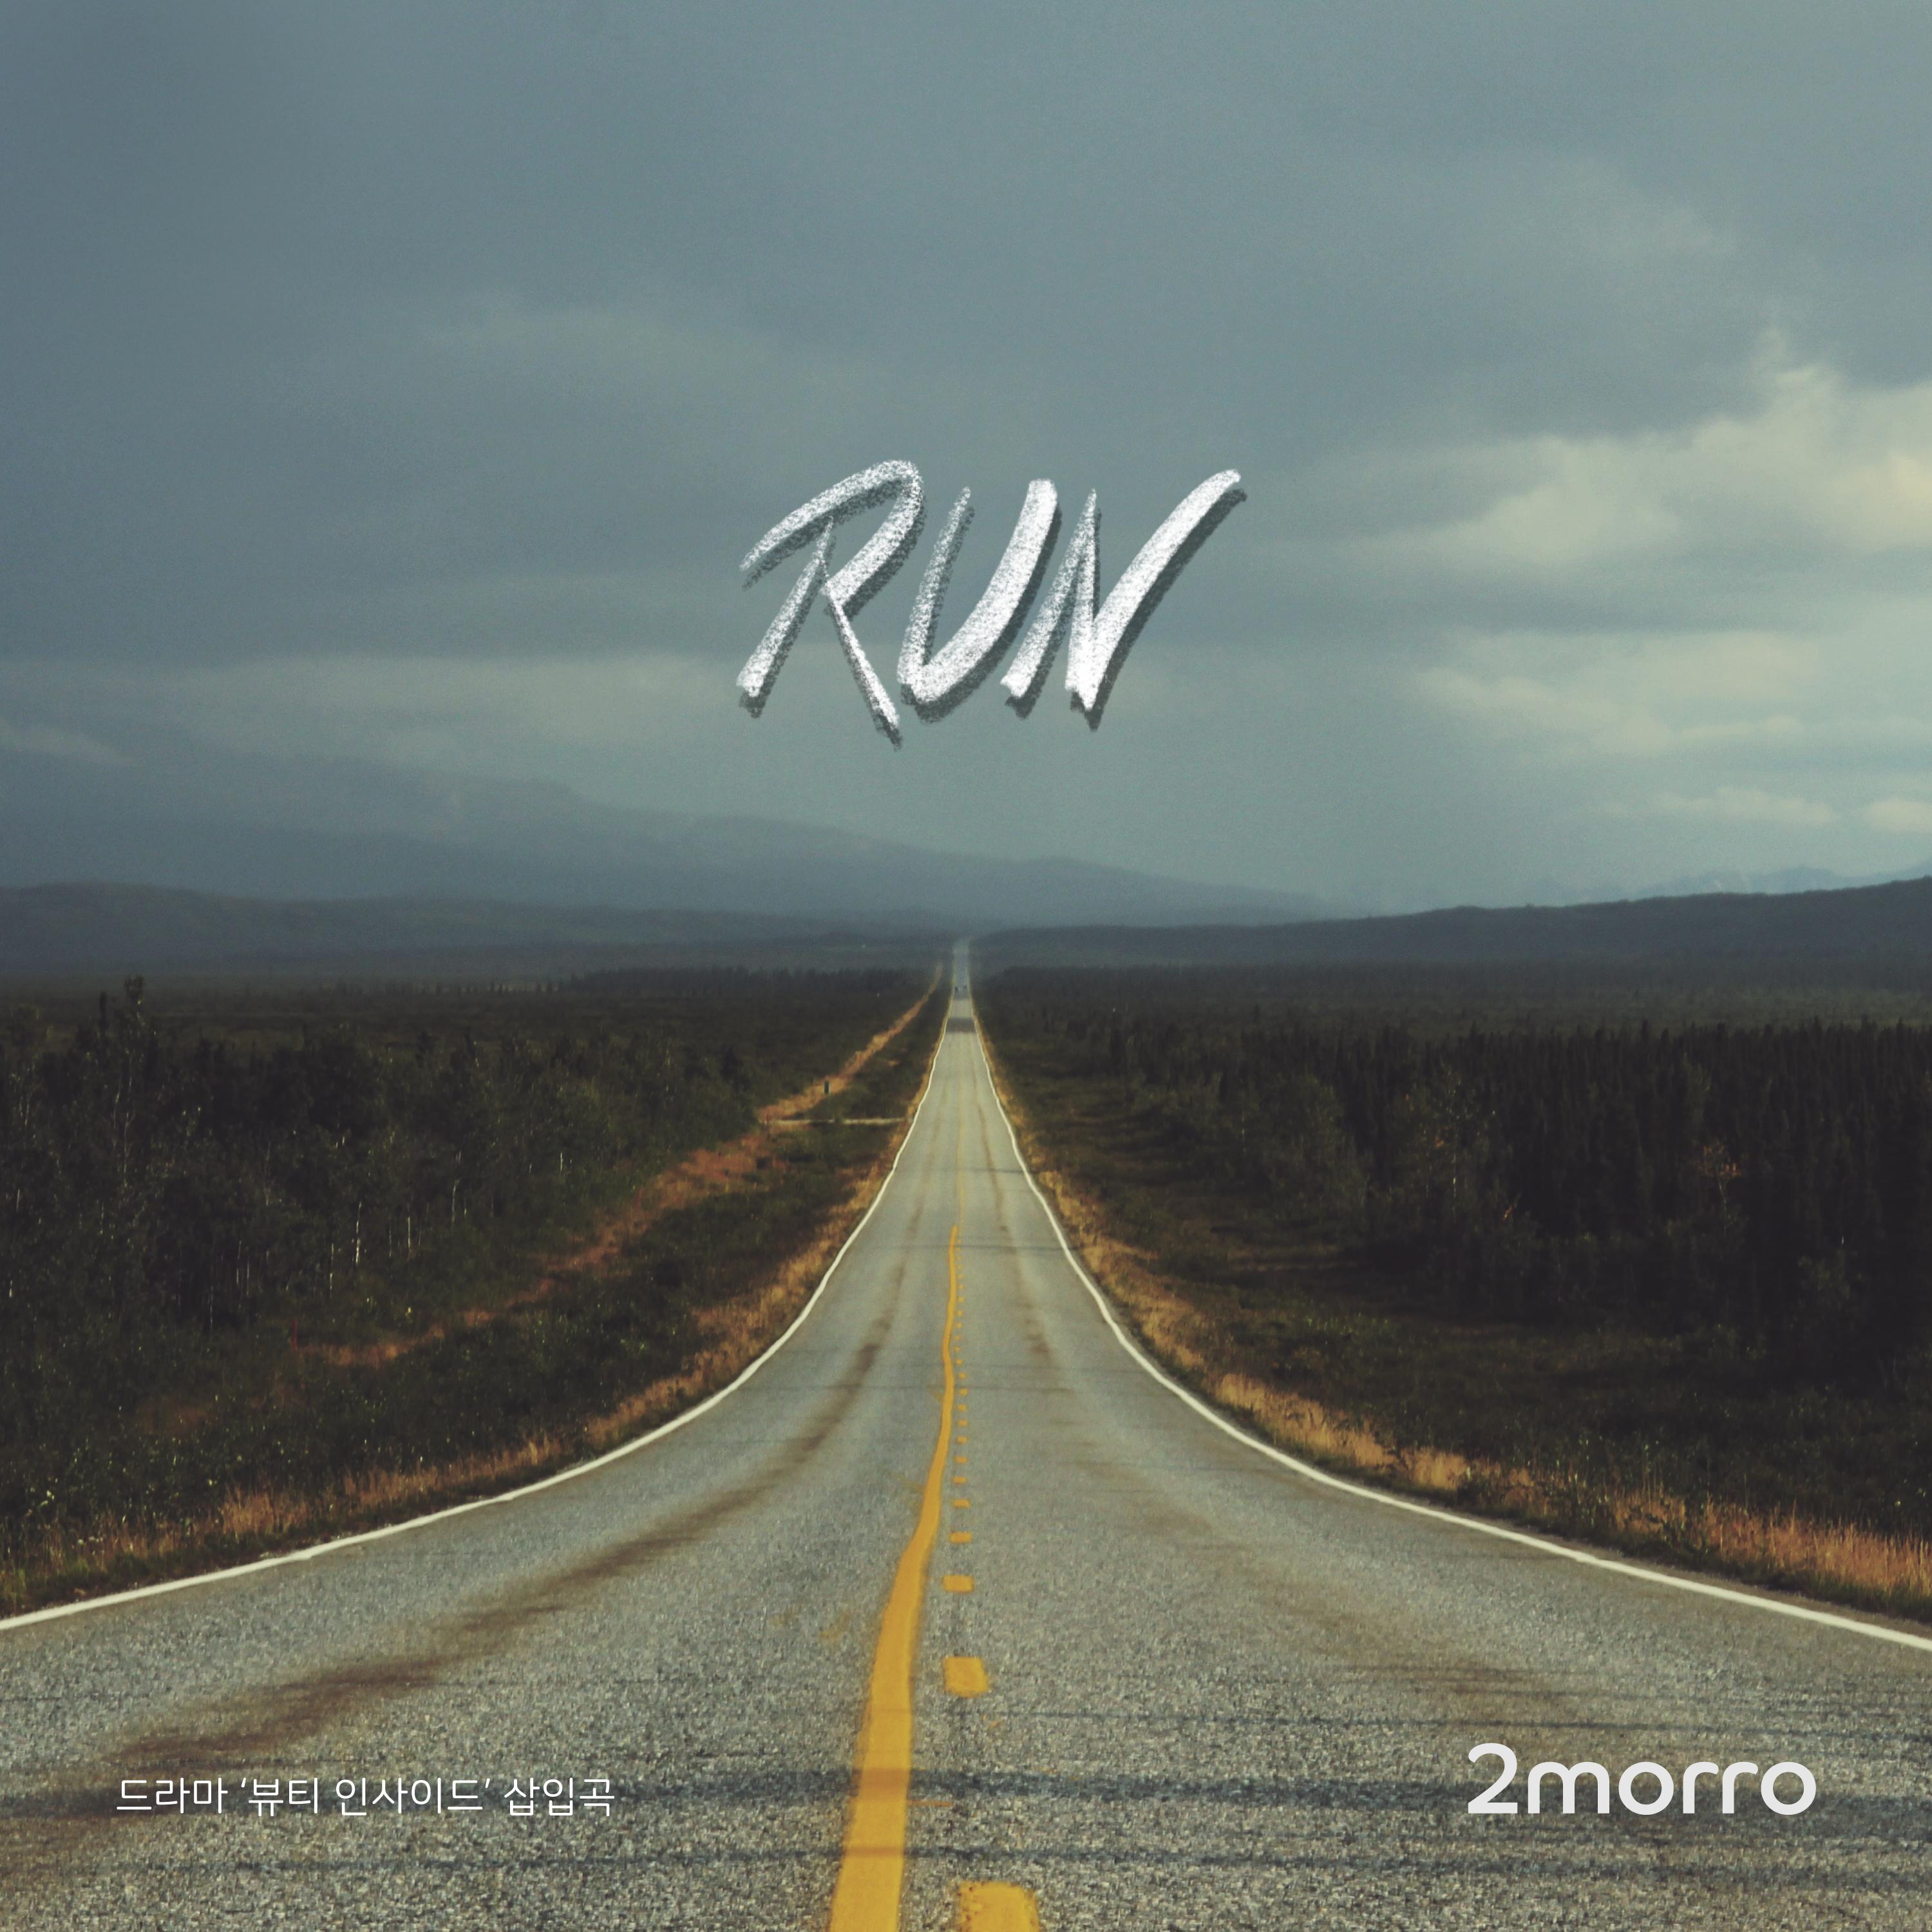 Run歌词 歌手2morro-专辑Run-单曲《Run》LRC歌词下载